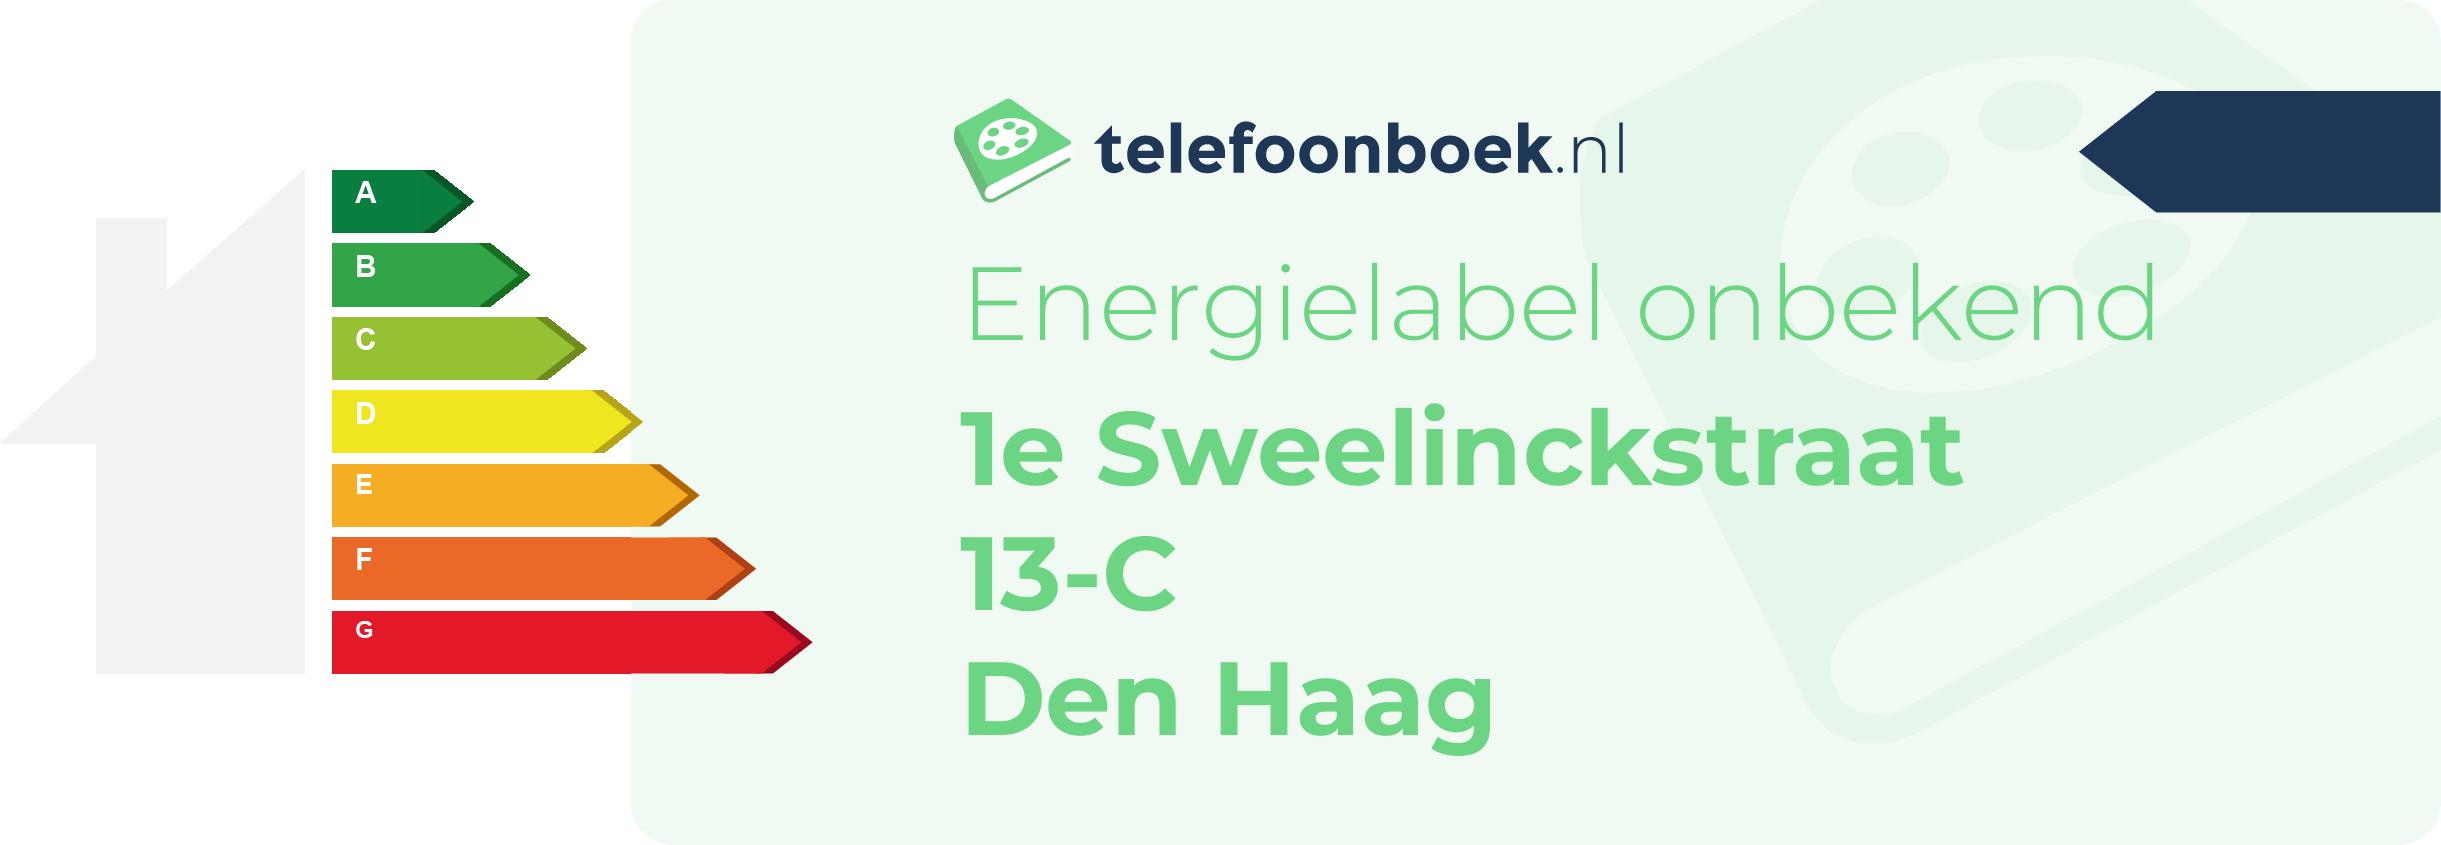 Energielabel 1e Sweelinckstraat 13-C Den Haag